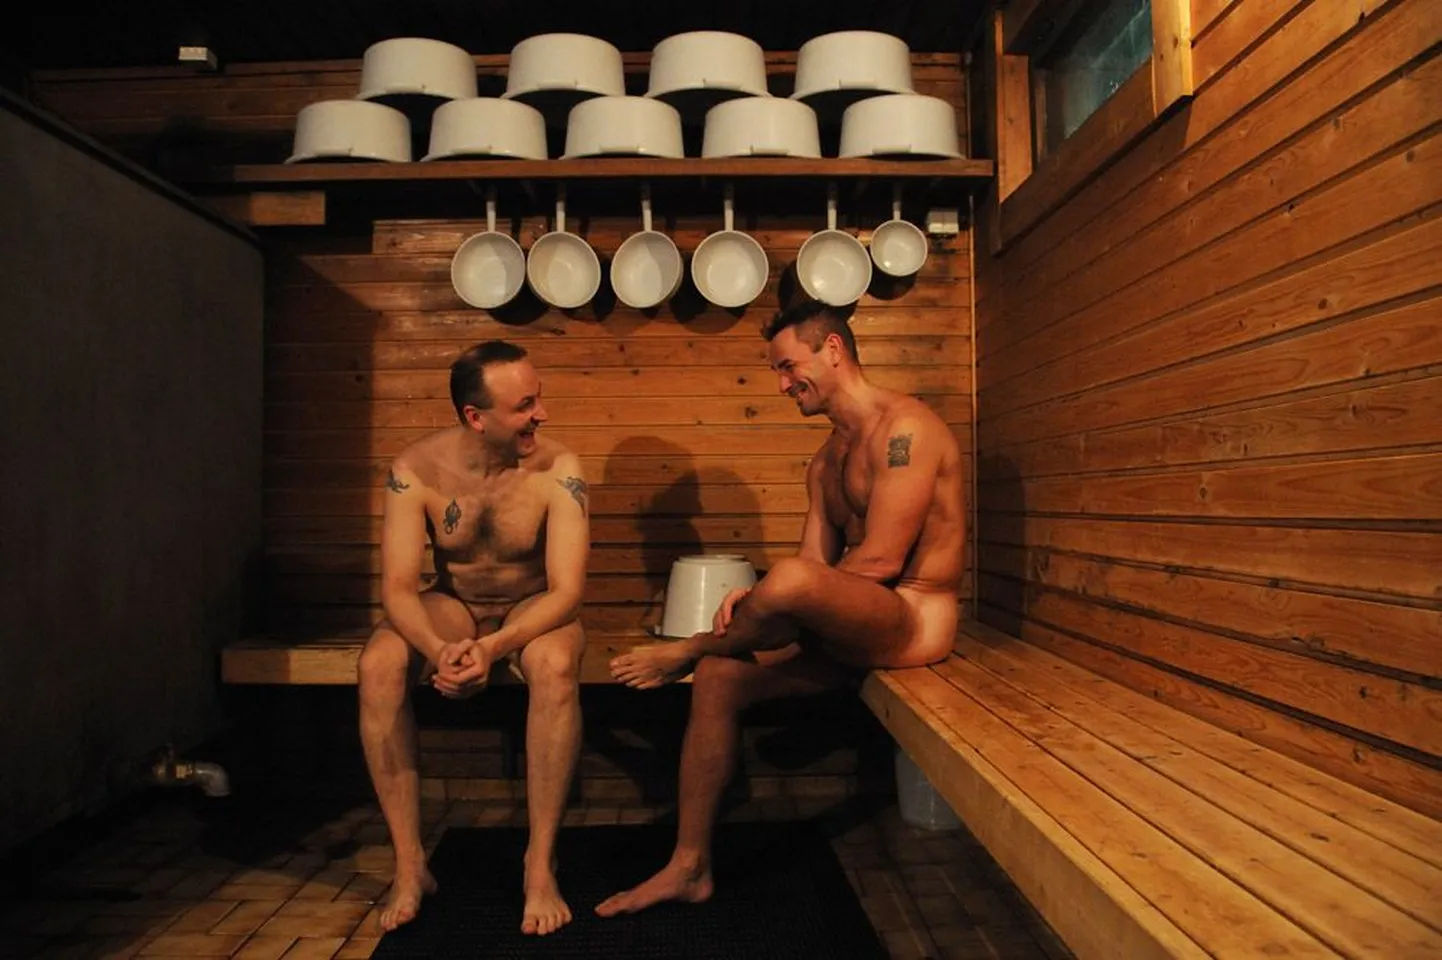 Soome mehed saunas: dokumentaalfilm «Eluaur» sai Pärnu filmifestivali žürii peaauhinna kunstilise teostuse eest, oli Euroopa Filmiauhinna 2010 nominent ning kandideeris parima võõrkeelse filmi Oscarile.